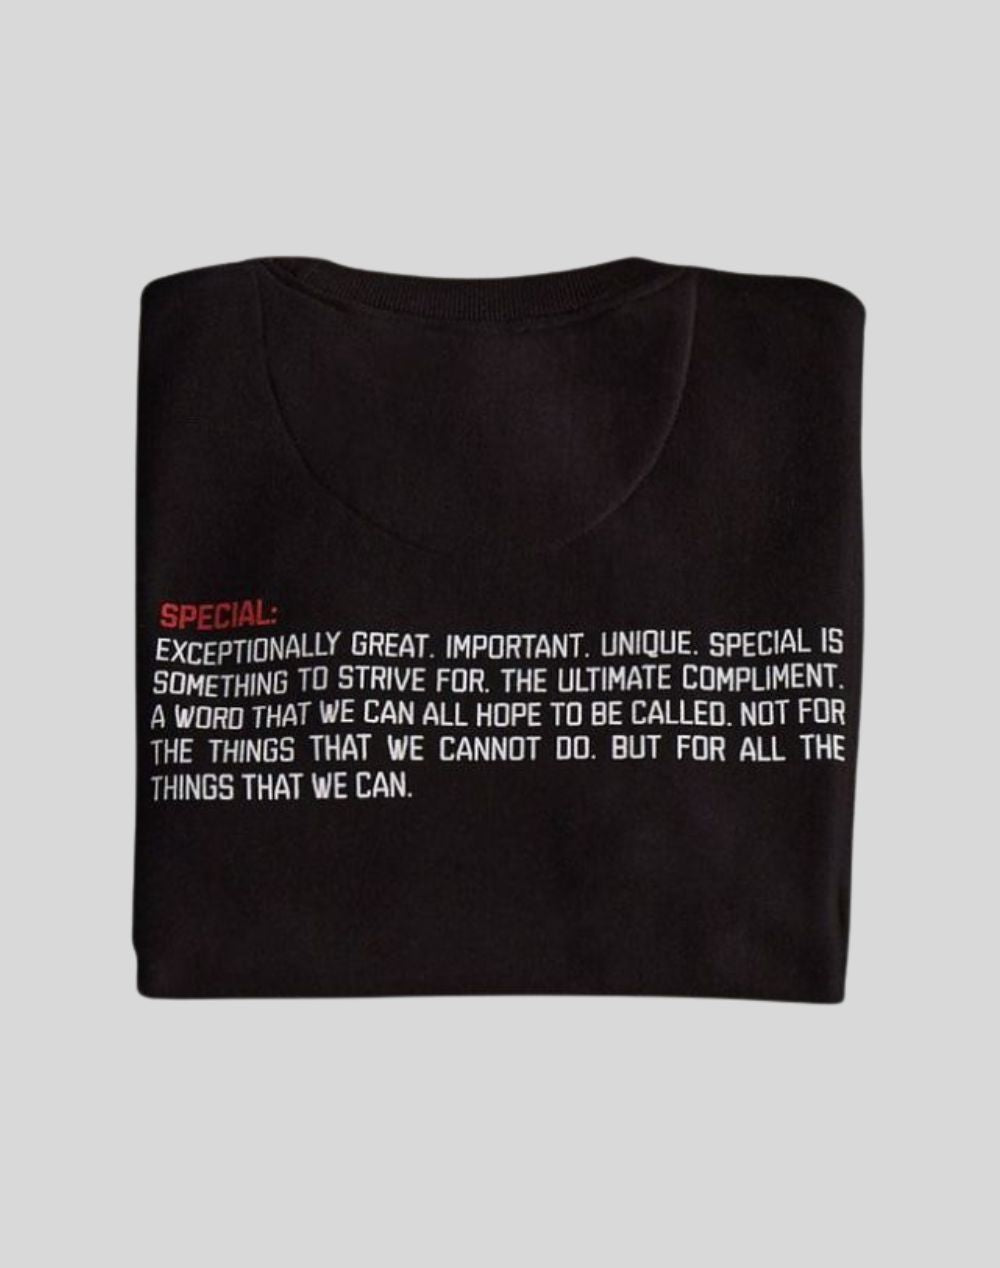 SPECIAL T-Shirt Schwarz Unisex